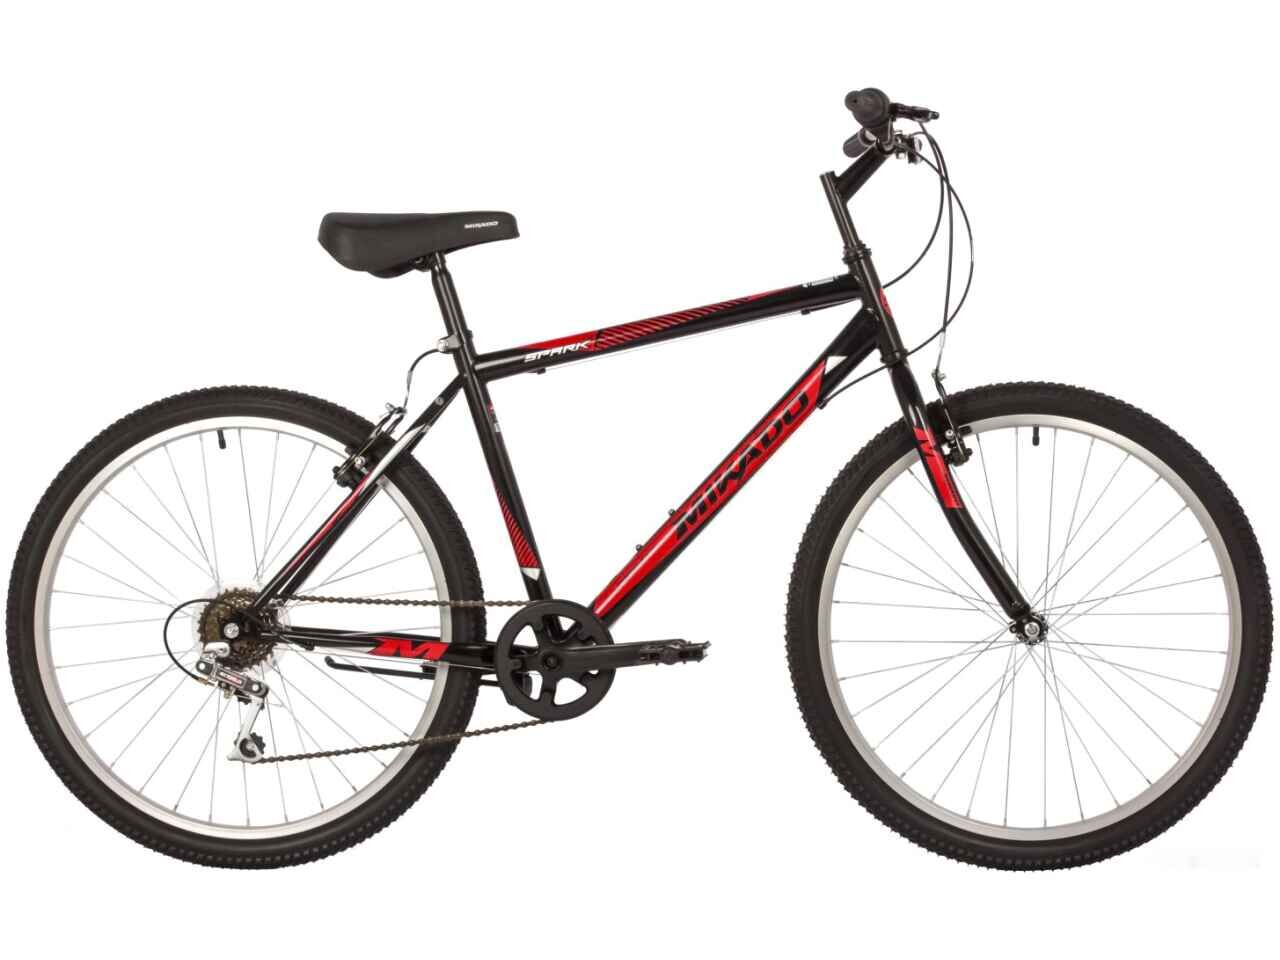 Велосипед Mikado Spark 1.0 26 р.18 2022 (красный/черный)